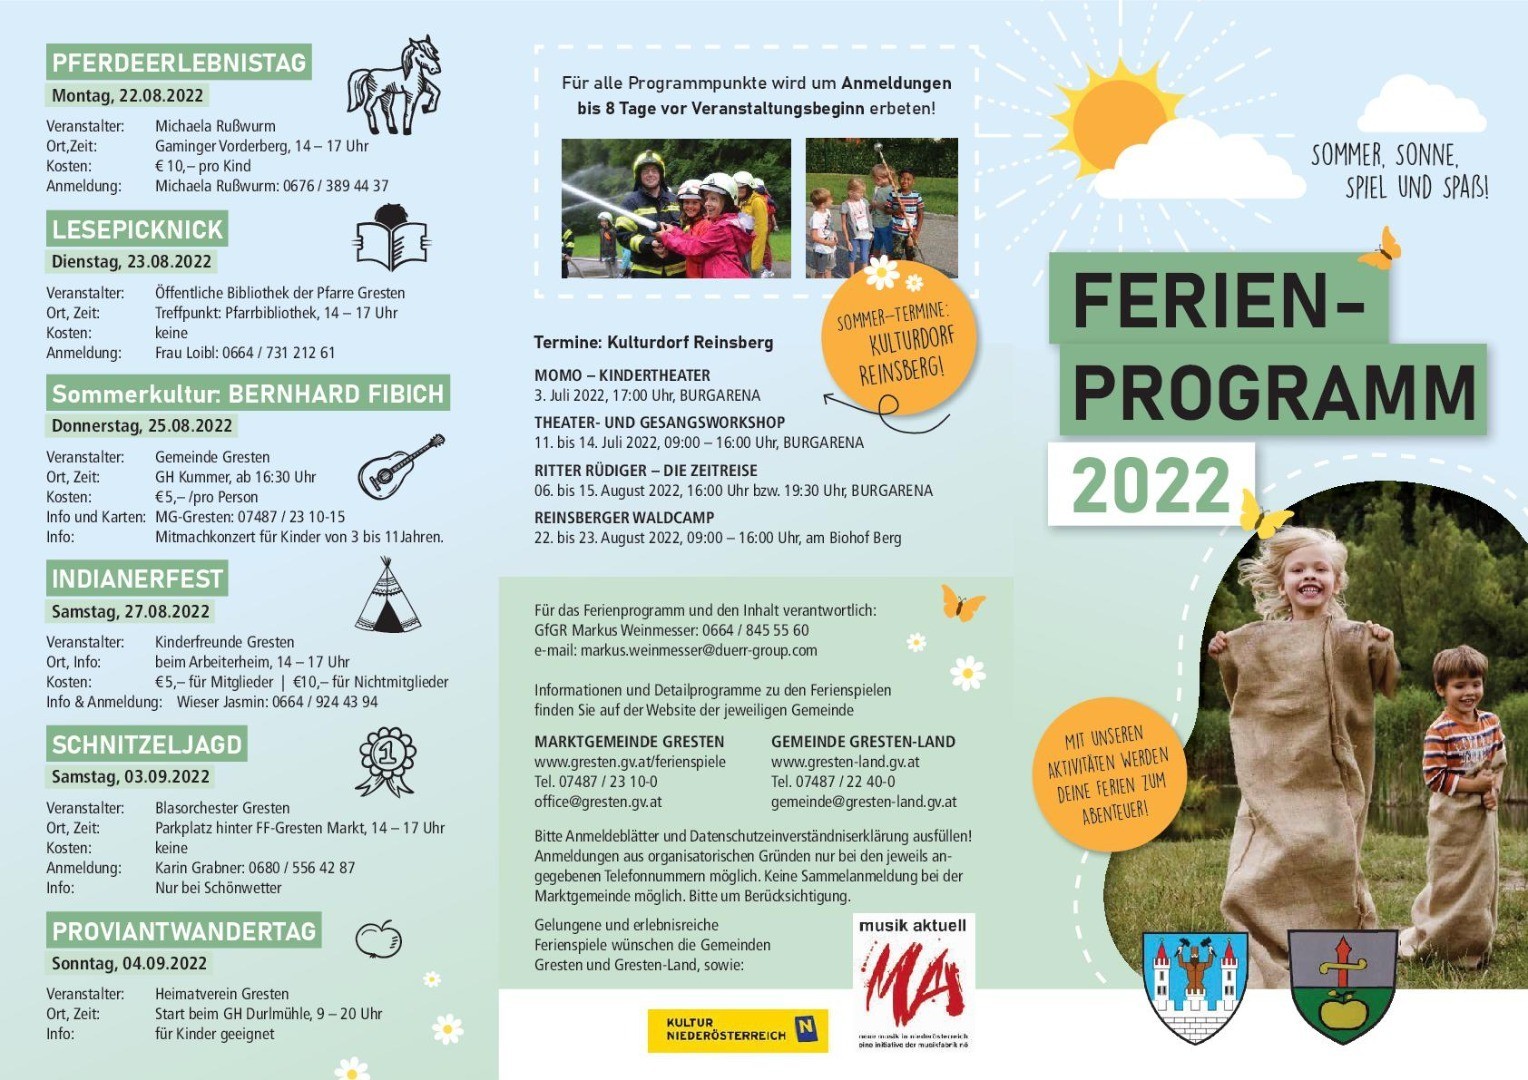 Wickelfalzfolder_Ferienprogram_2022_06-13-001.jpg